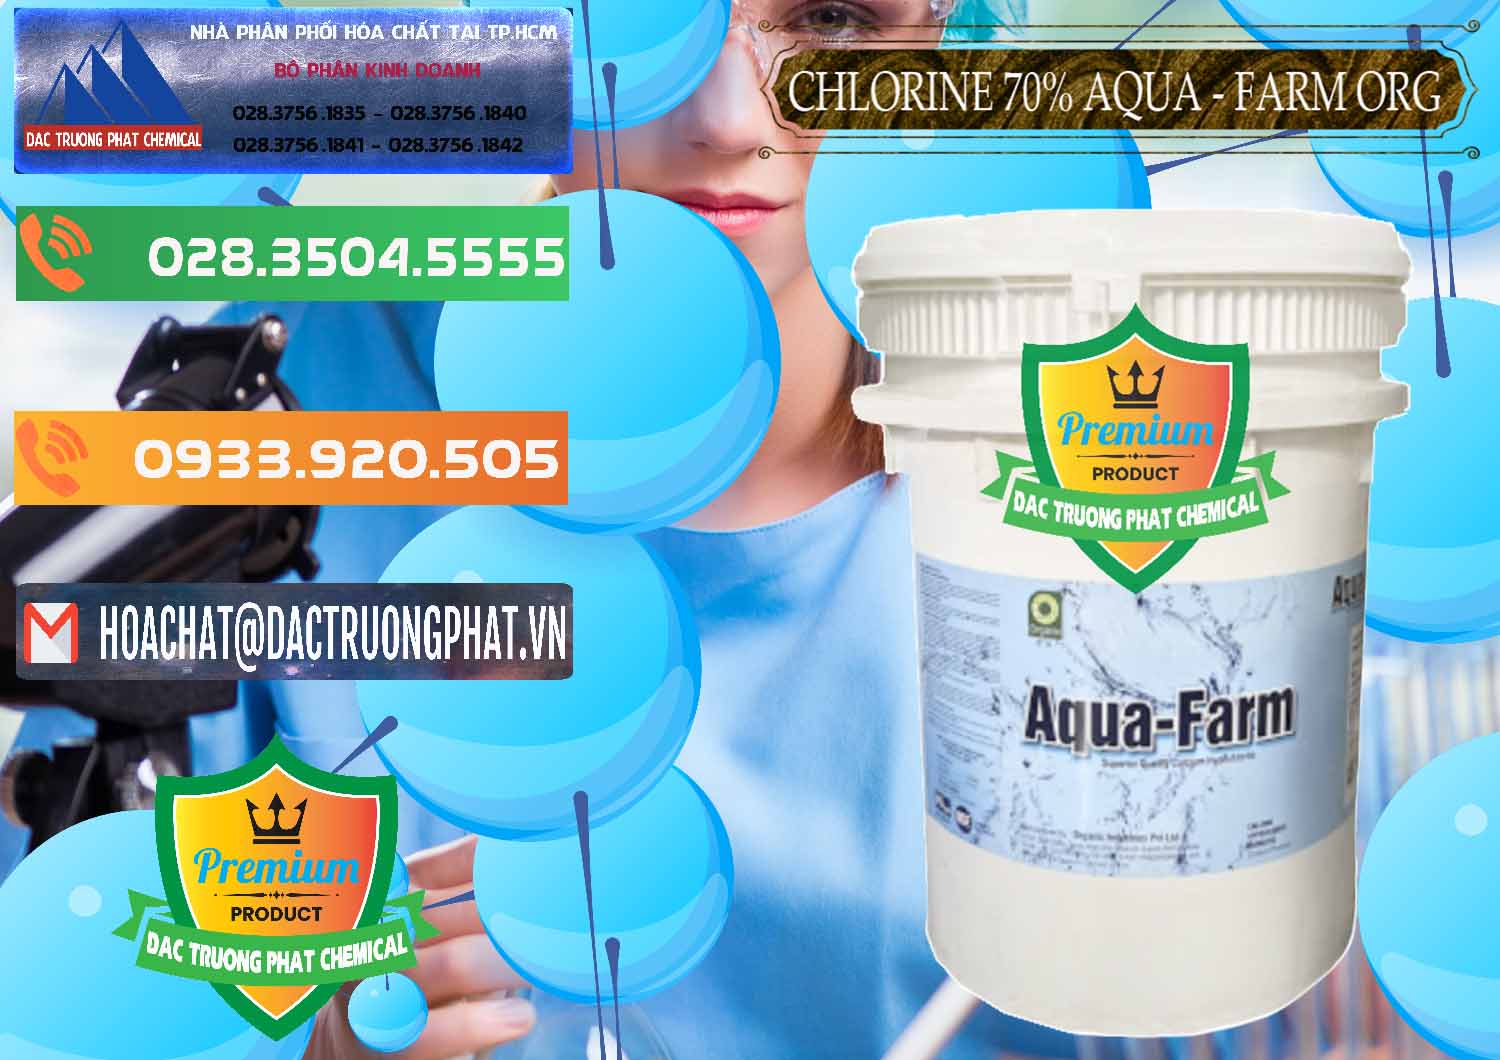 Cty cung ứng _ bán Chlorine – Clorin 70% Aqua - Farm ORG Organic Ấn Độ India - 0246 - Đơn vị cung cấp và kinh doanh hóa chất tại TP.HCM - hoachatxulynuoc.com.vn